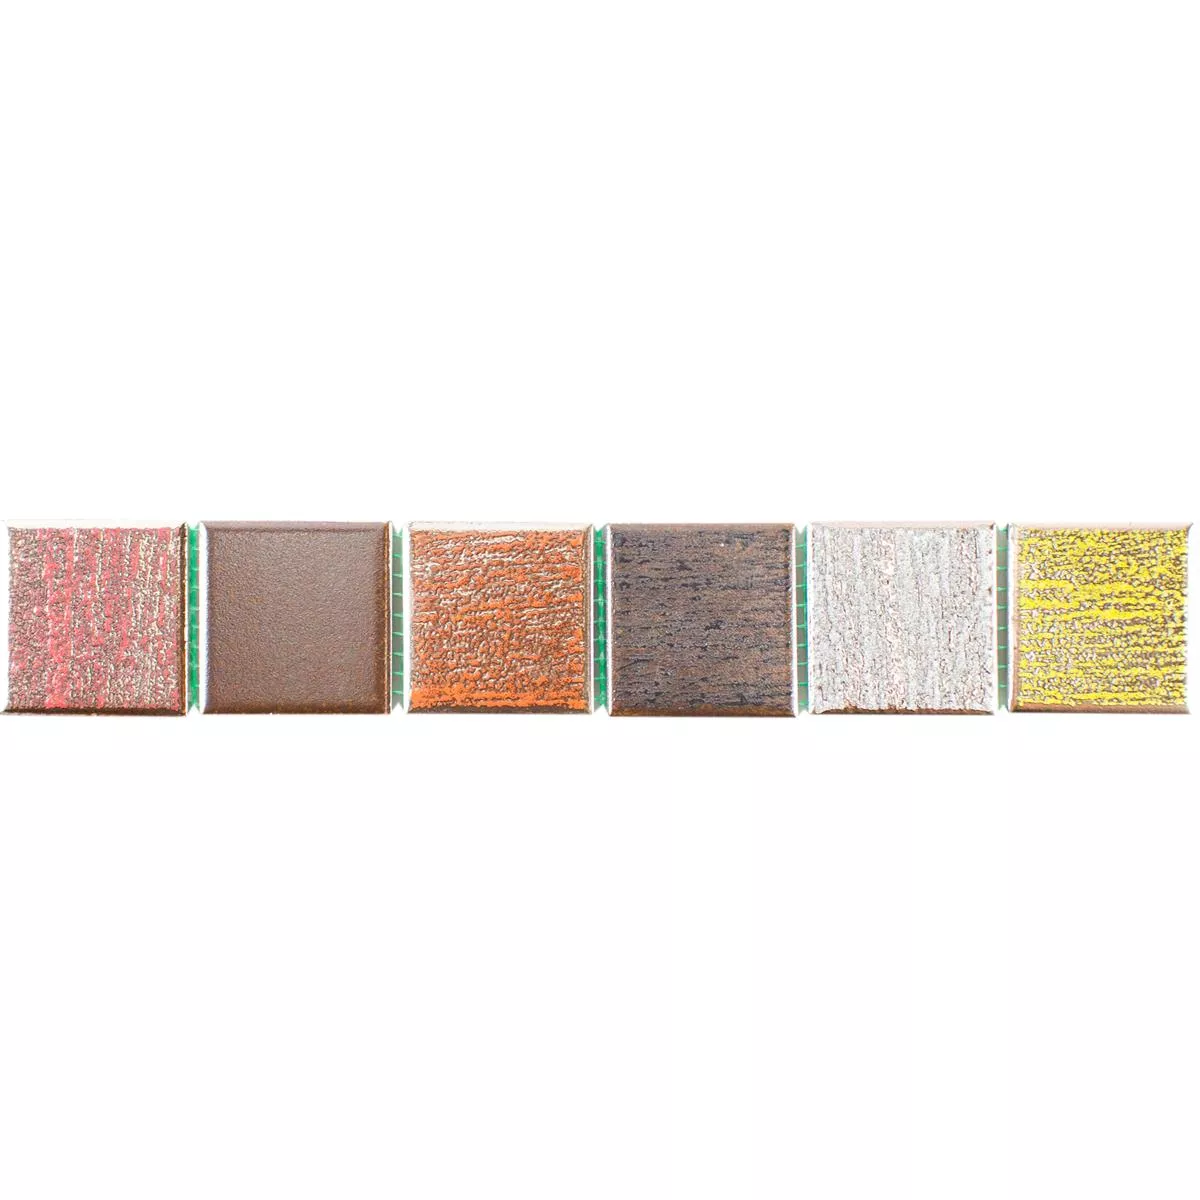 Ceramic Tiles Border Bridport Colored Mix